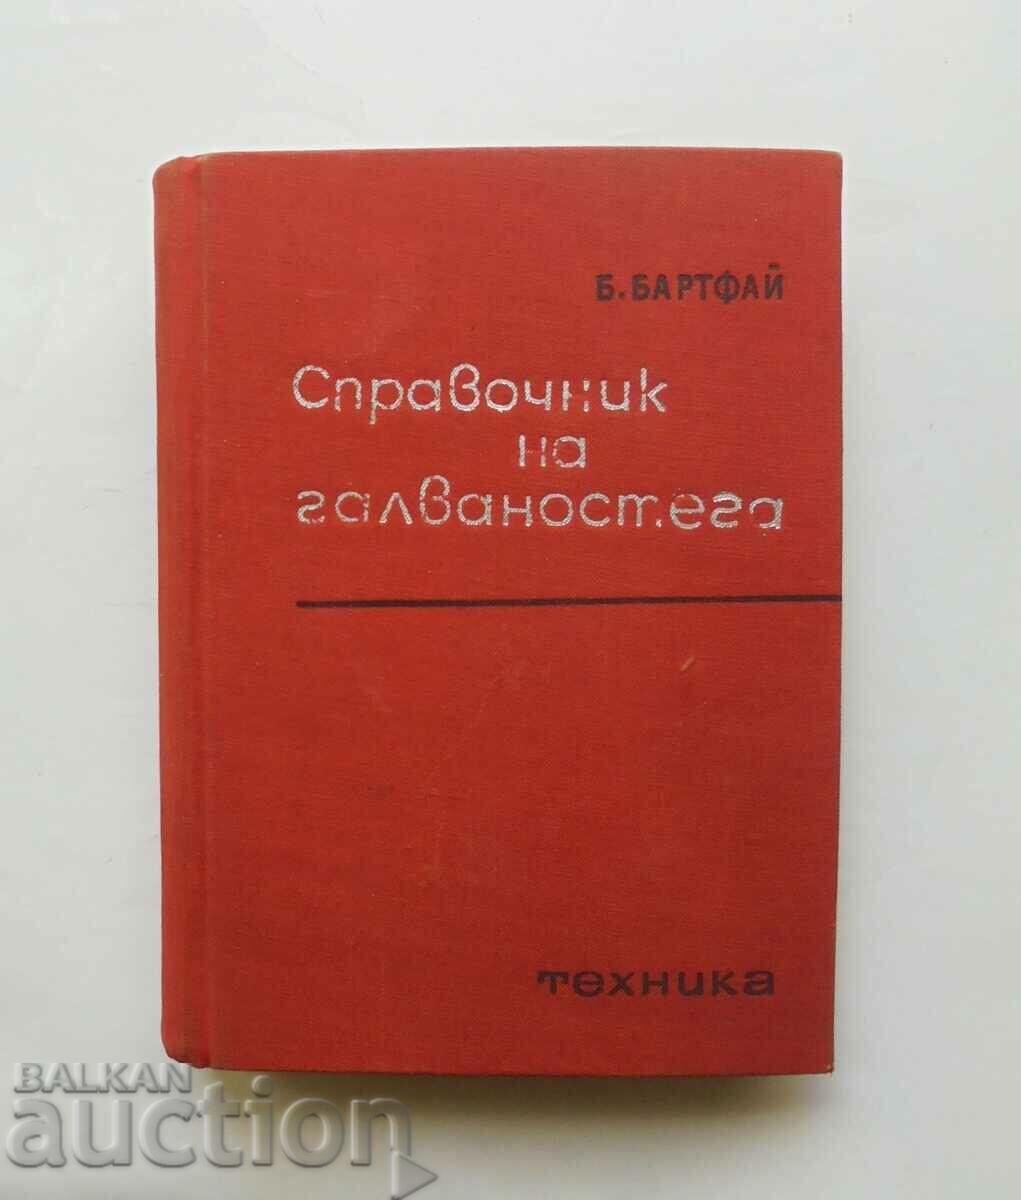 Galvanostega Handbook - Bela Bartfay 1967